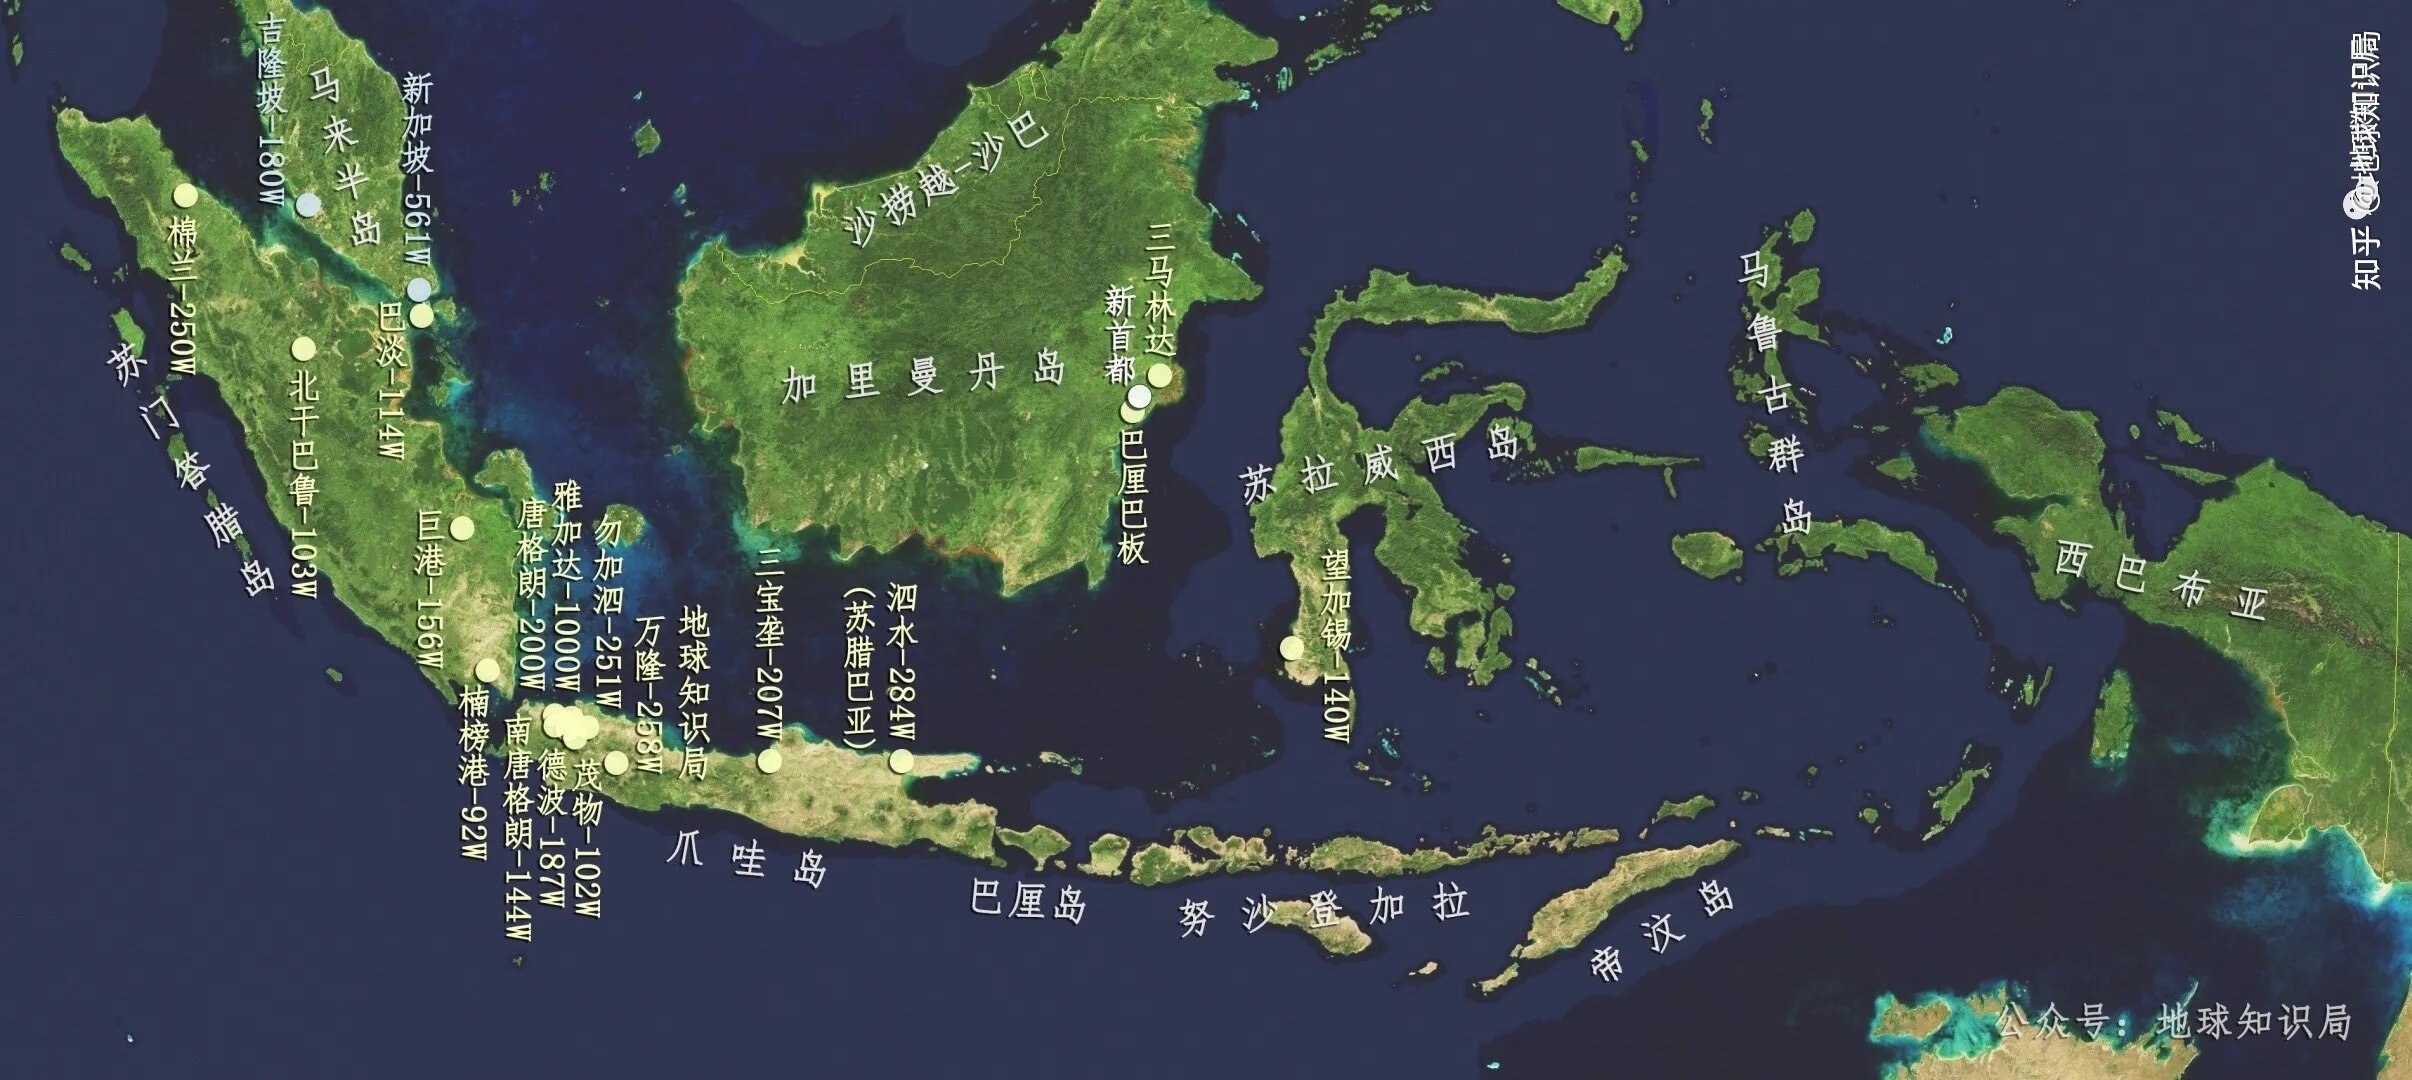 印度尼西亚主要城市分布地图